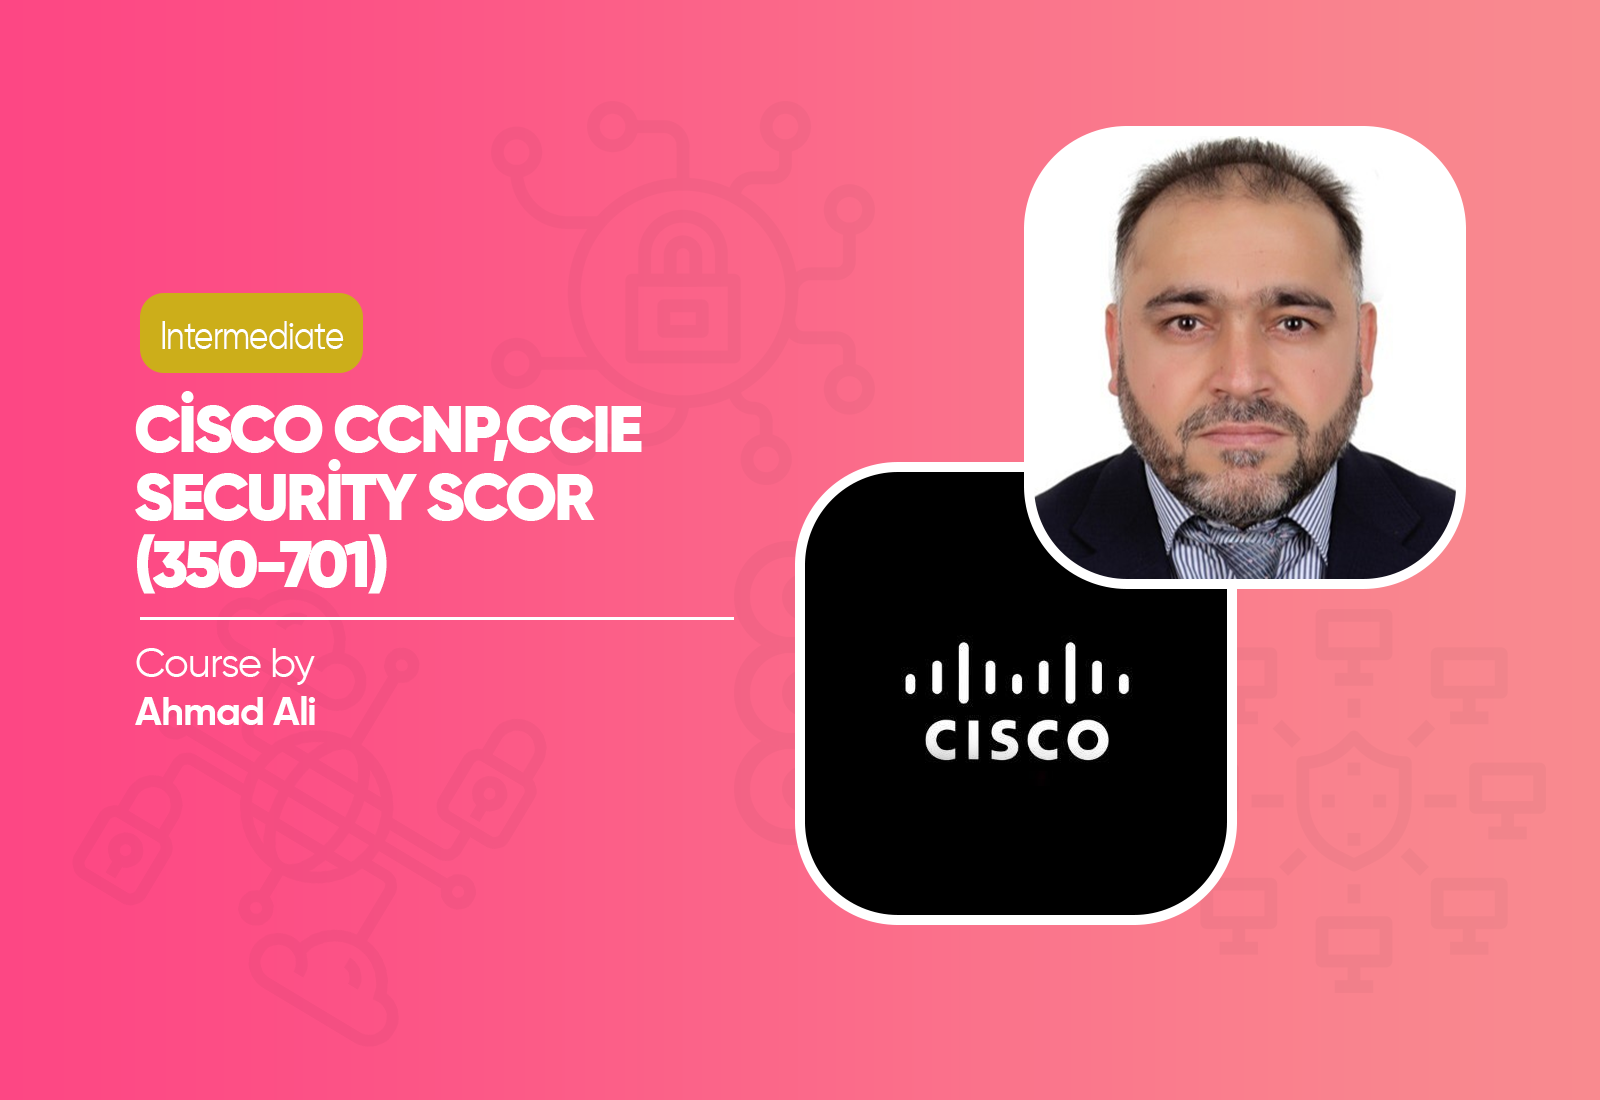 Cisco CCNP,CCIE Security SCOR (350-701) Course by Ahmad Ali